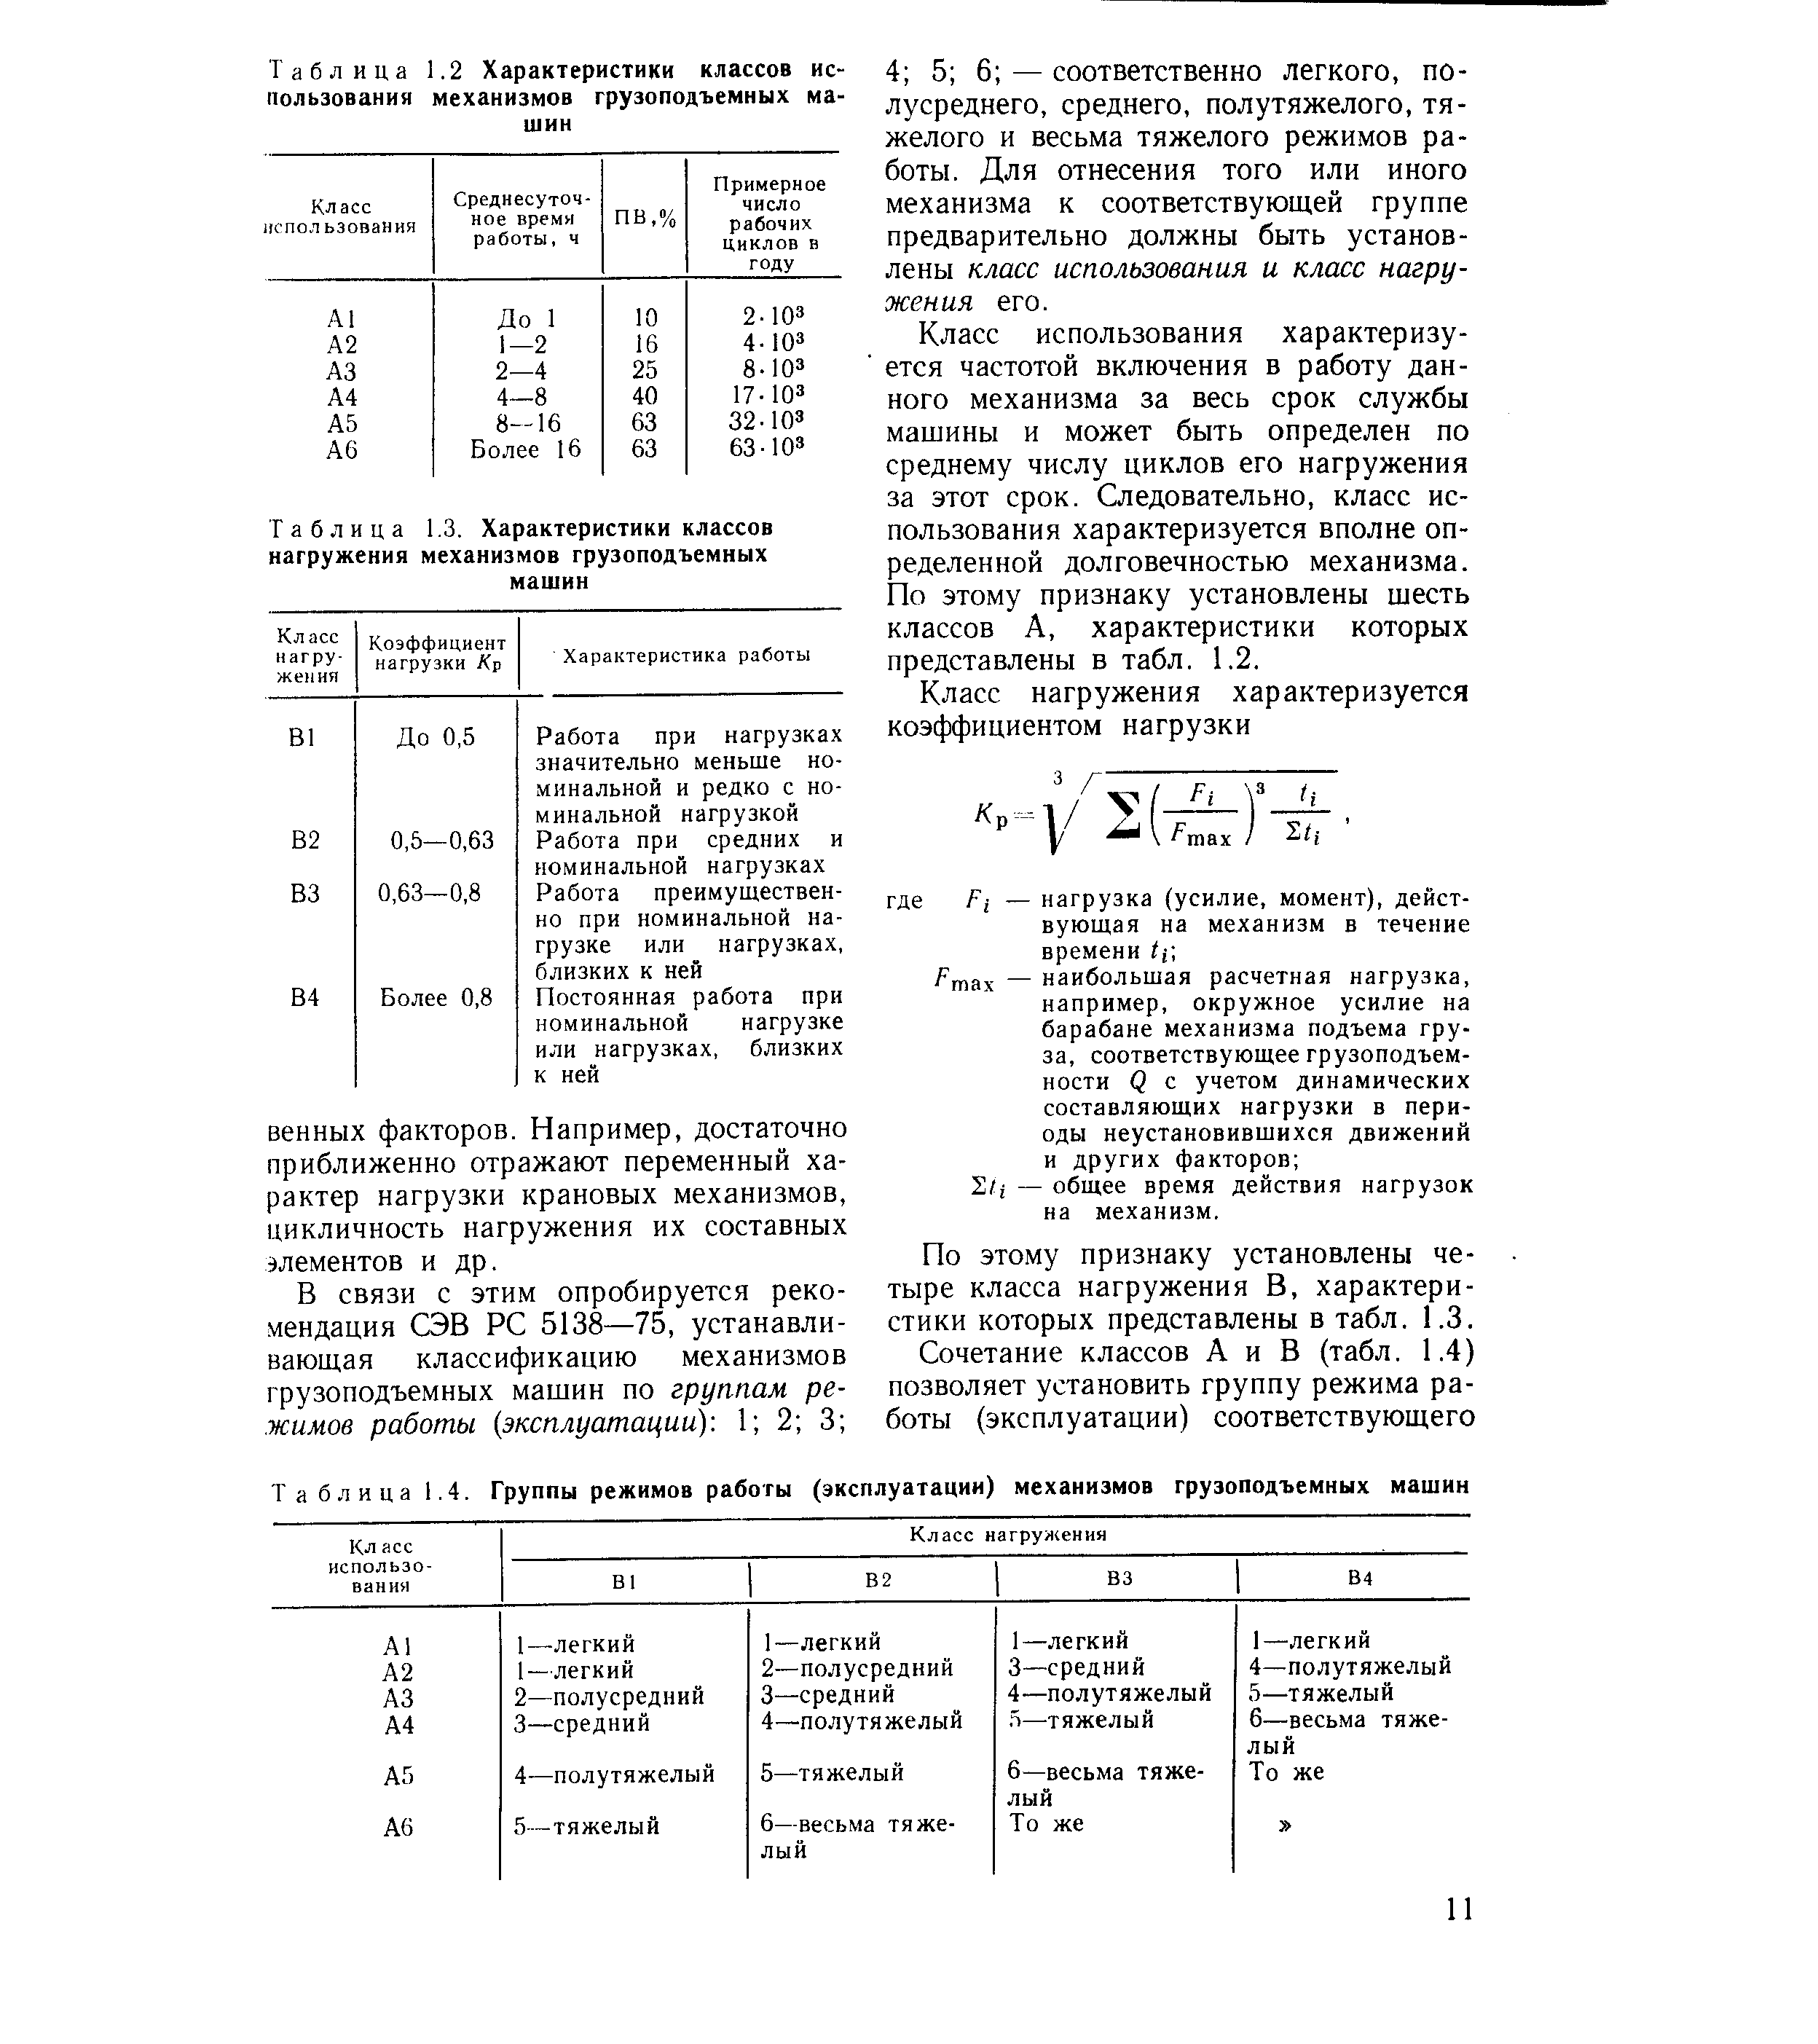 Таблица 1.3. Характеристики классов нагружения механизмов грузоподъемных машин
